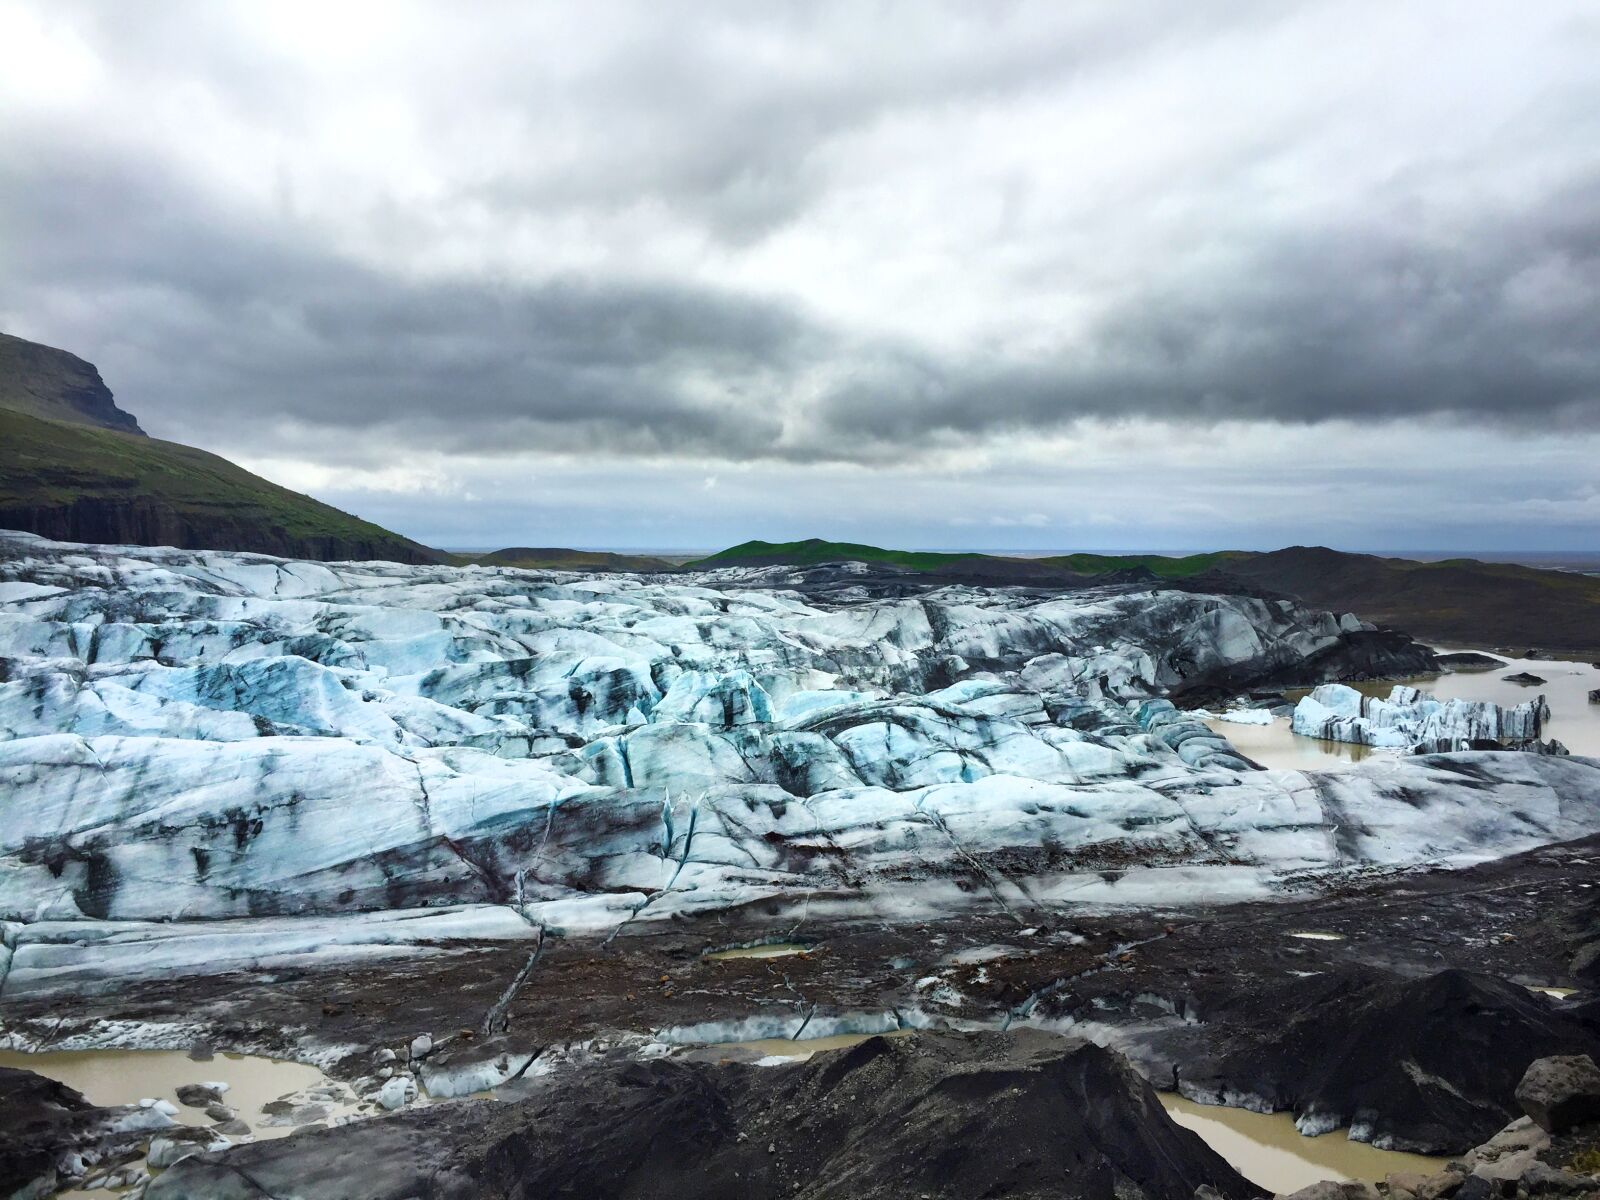 Apple iPhone 6 sample photo. Iceland, iceberg, lake photography